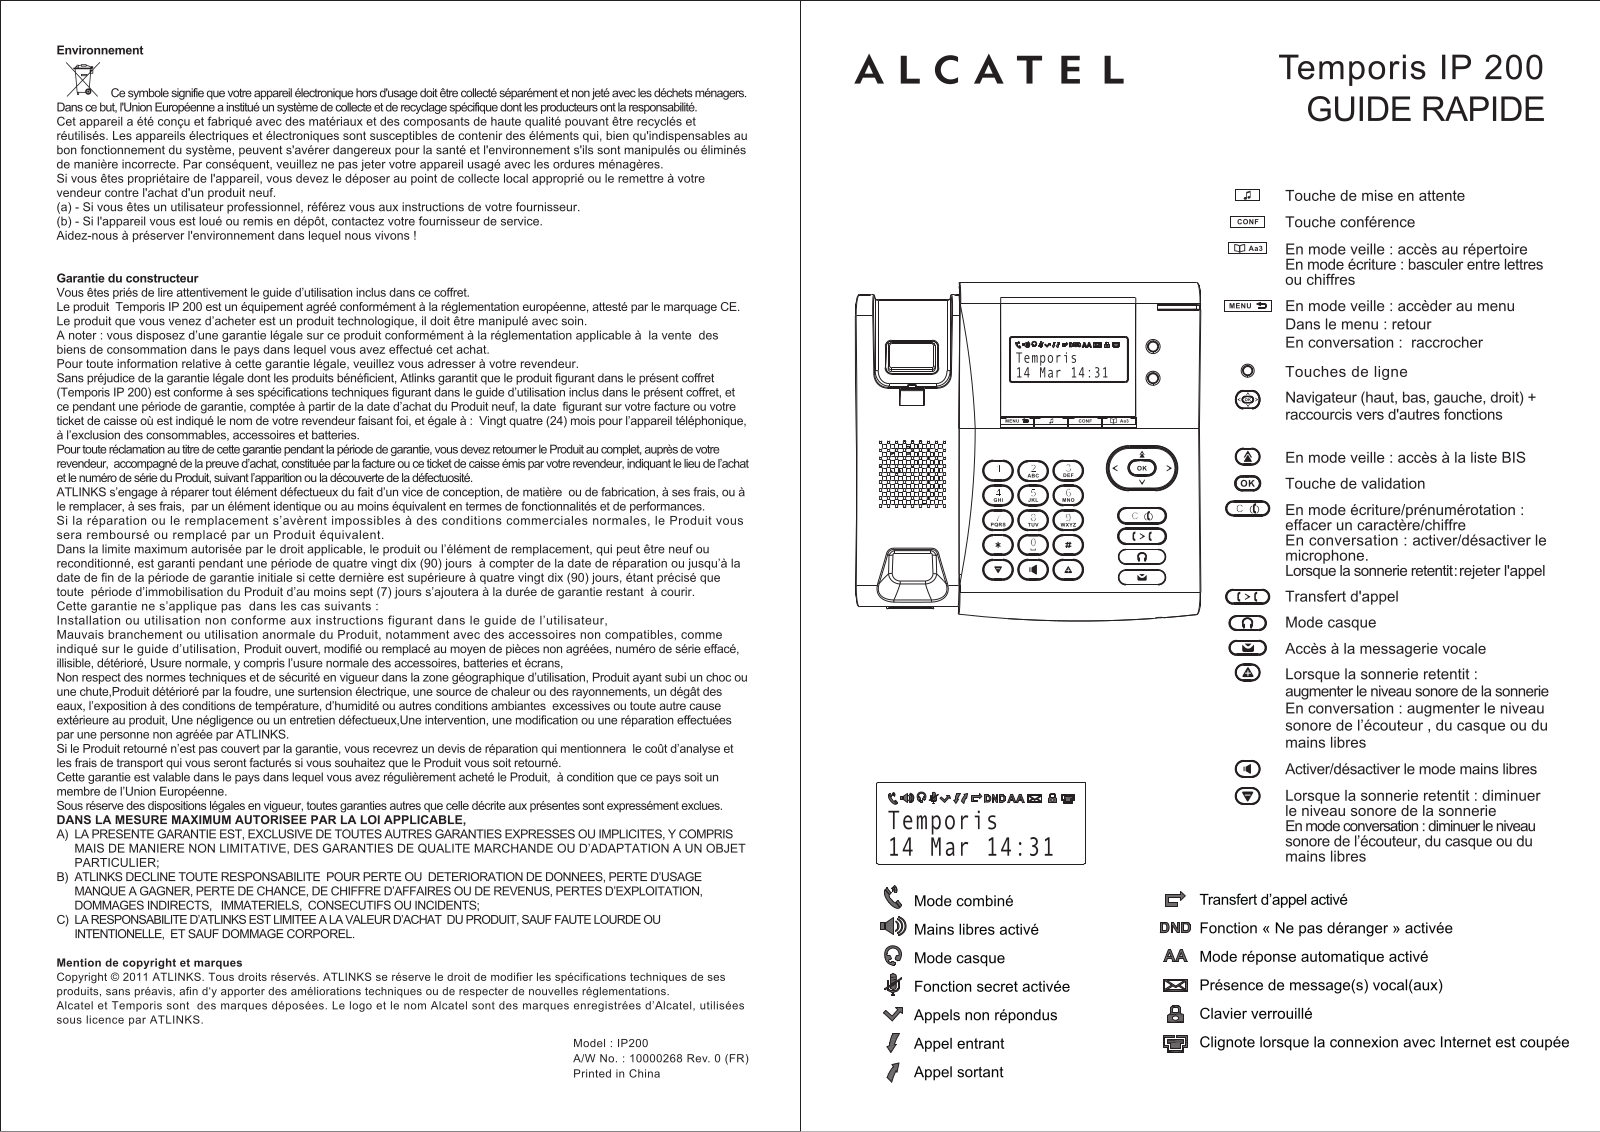 ALCATEL Temporis IP200 User Manual